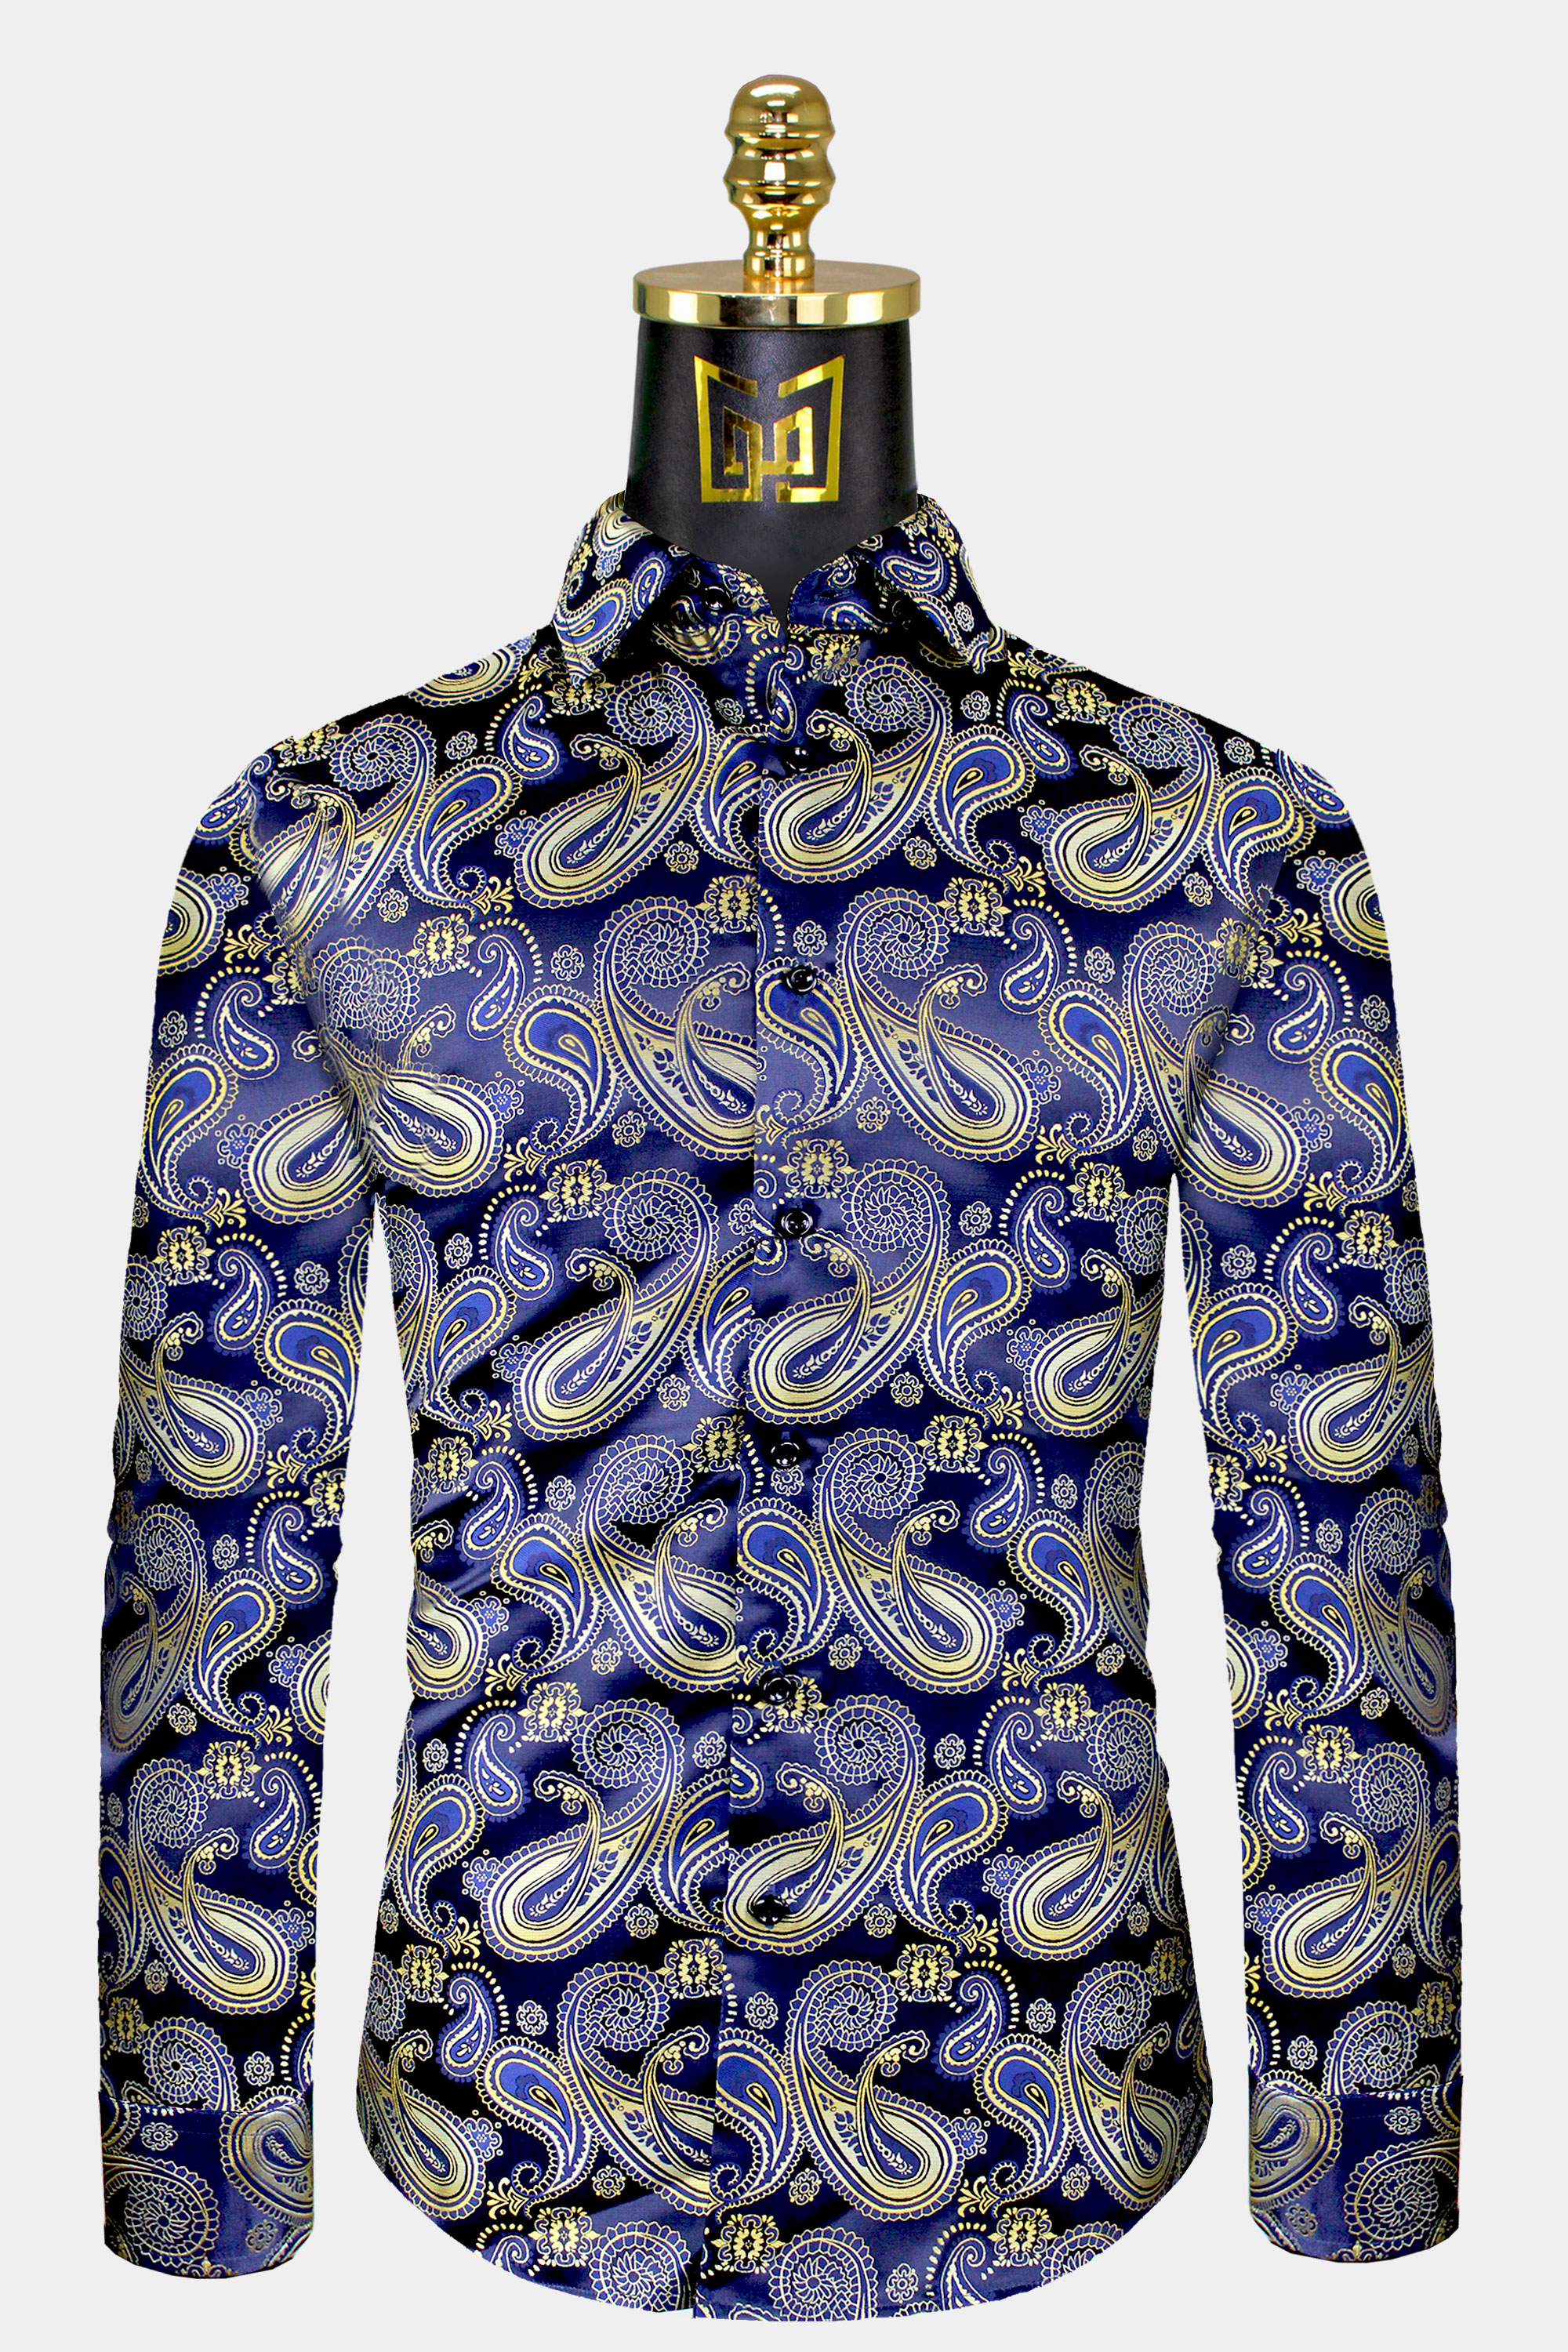 Mens-Navy-Blue-and-Gold-Shirt-Dress-Paisley-Floral-Shirt-For-Men-from-Gentlemansguru.com